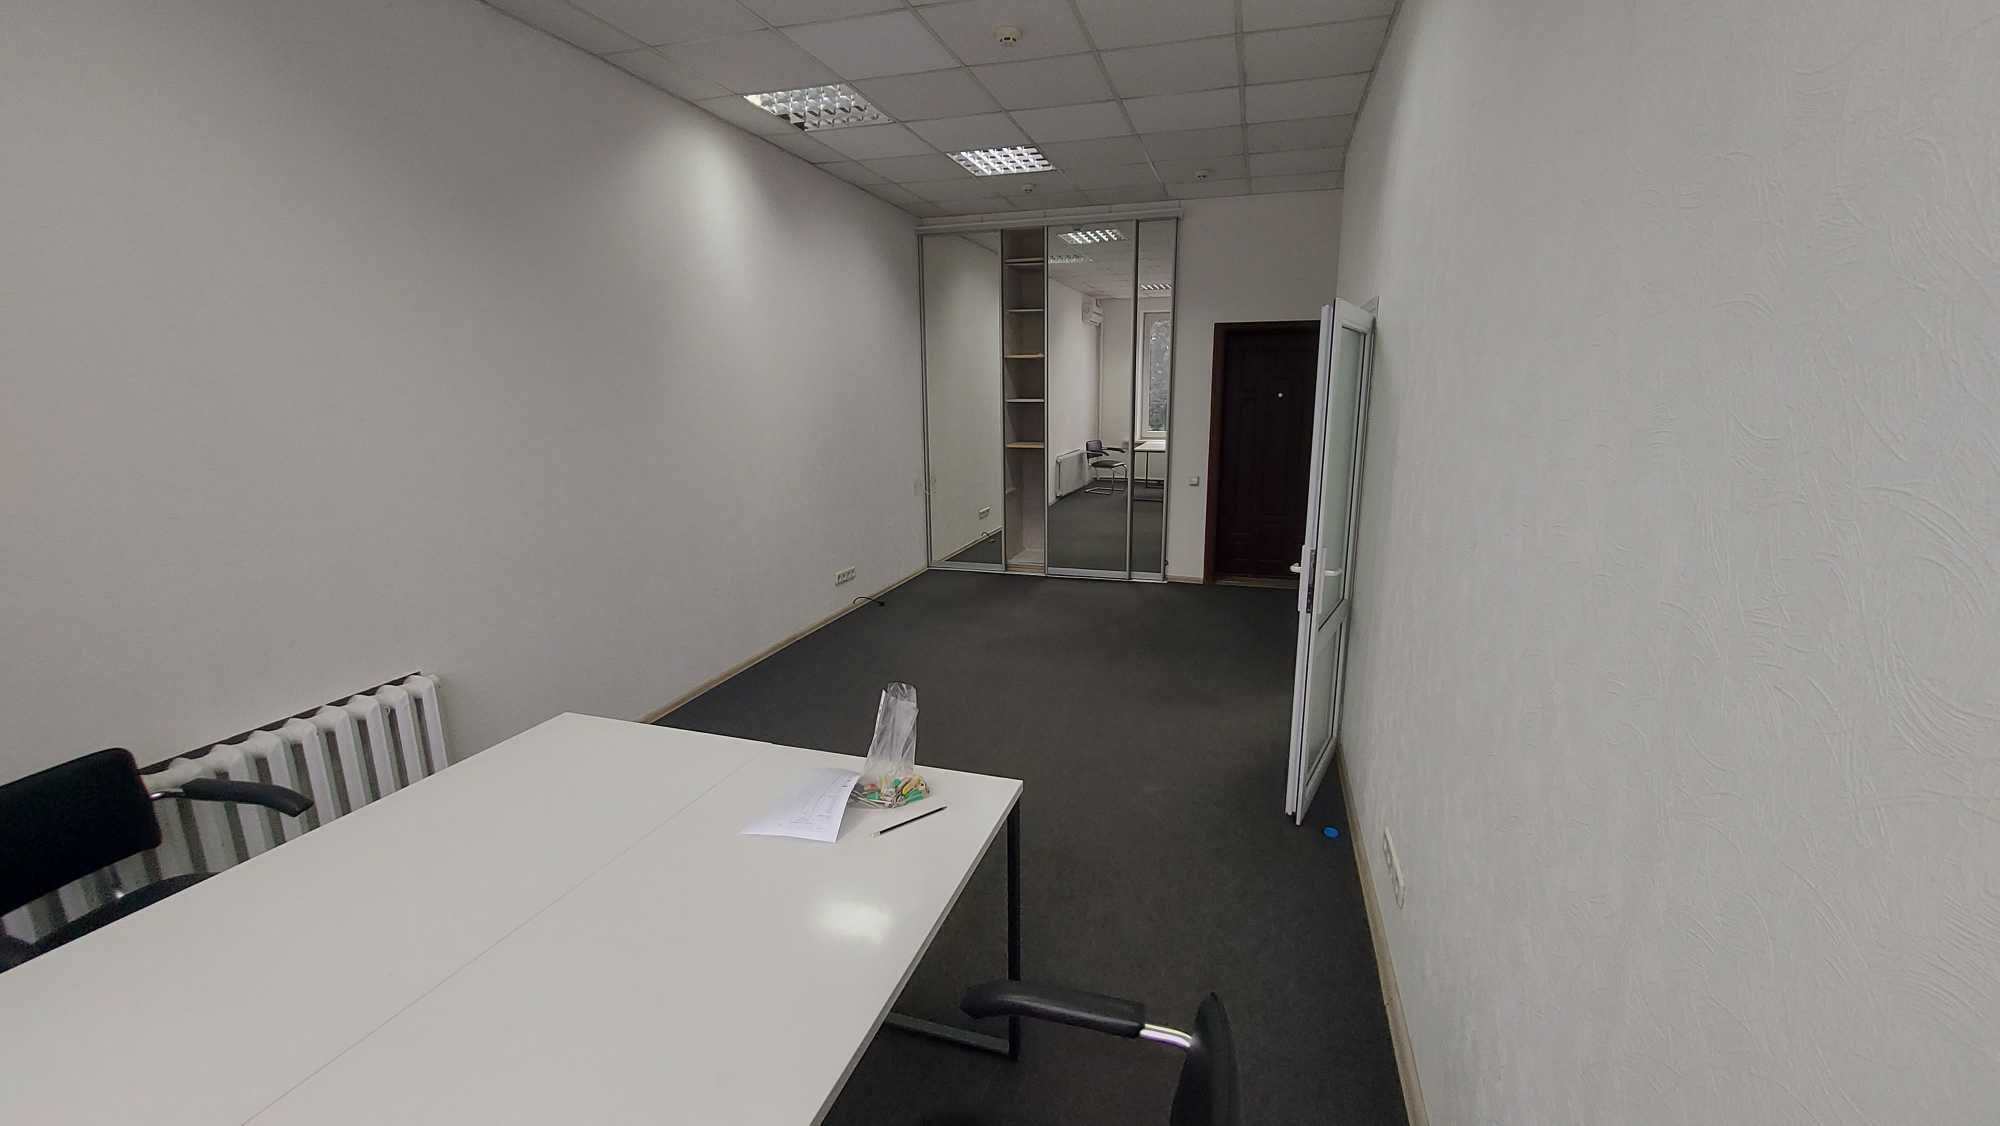 Сучасний офісний простір у центрі міста, від 20 до 600 кв.м